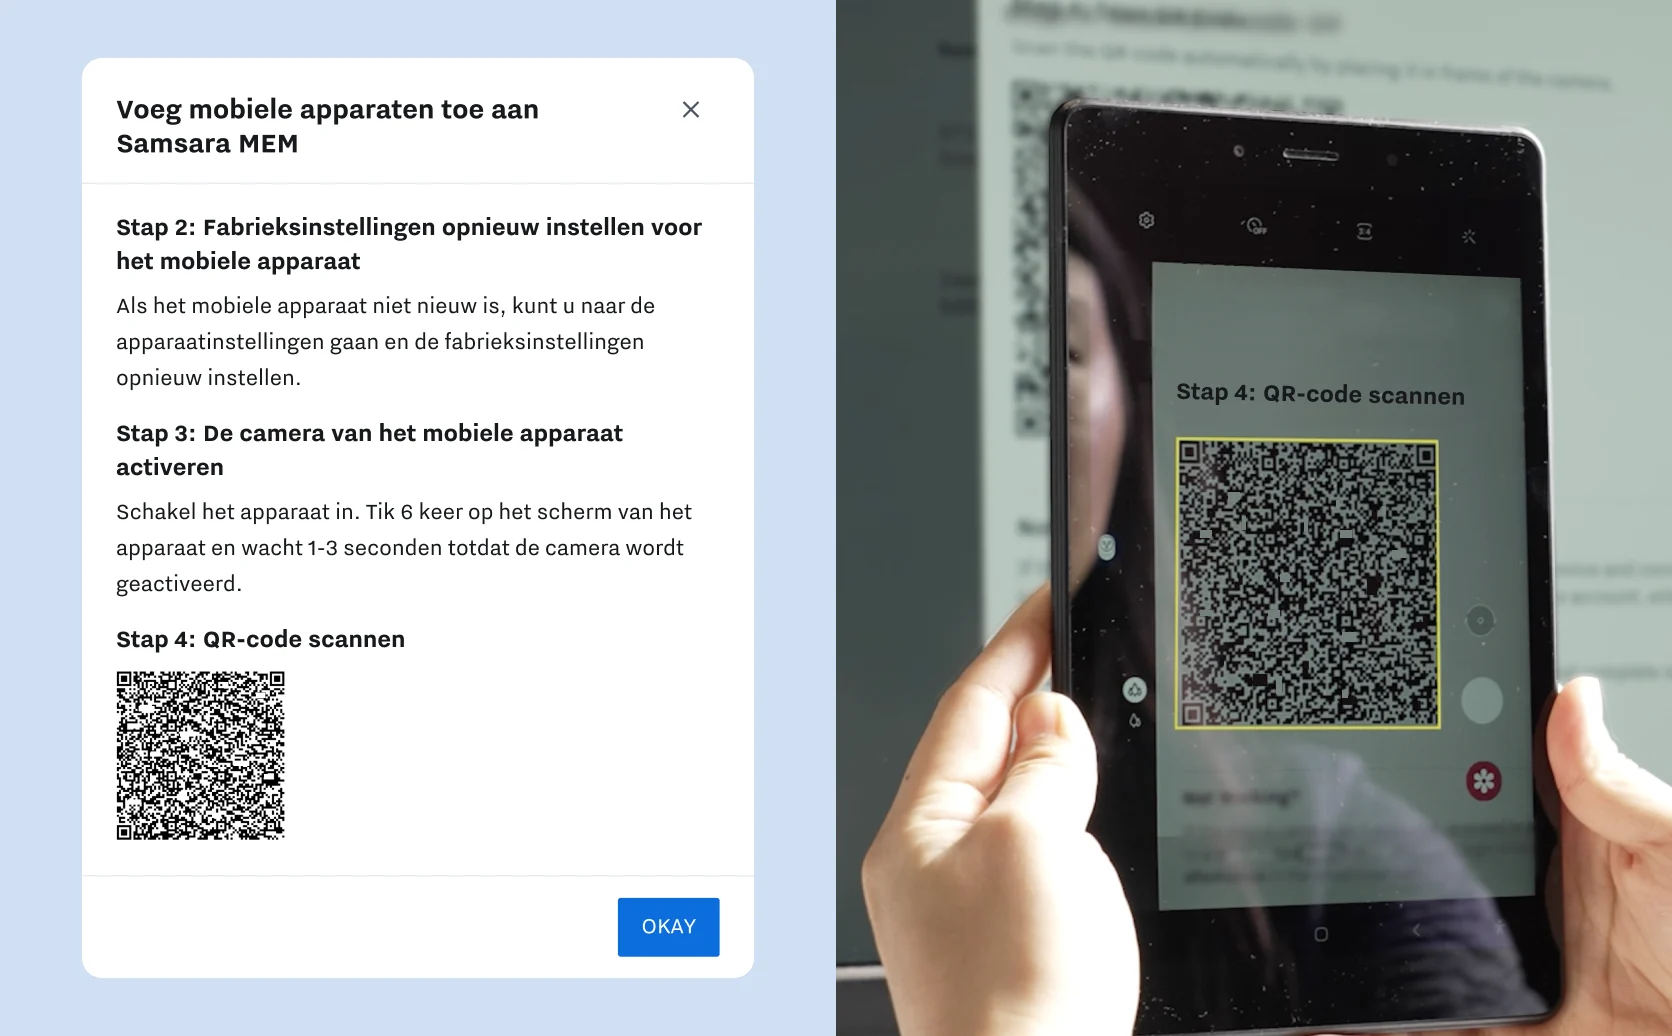 Productafbeelding van MEM-implementatie met specifieke rechten en afbeelding van handen die QR-code scannen met tablet